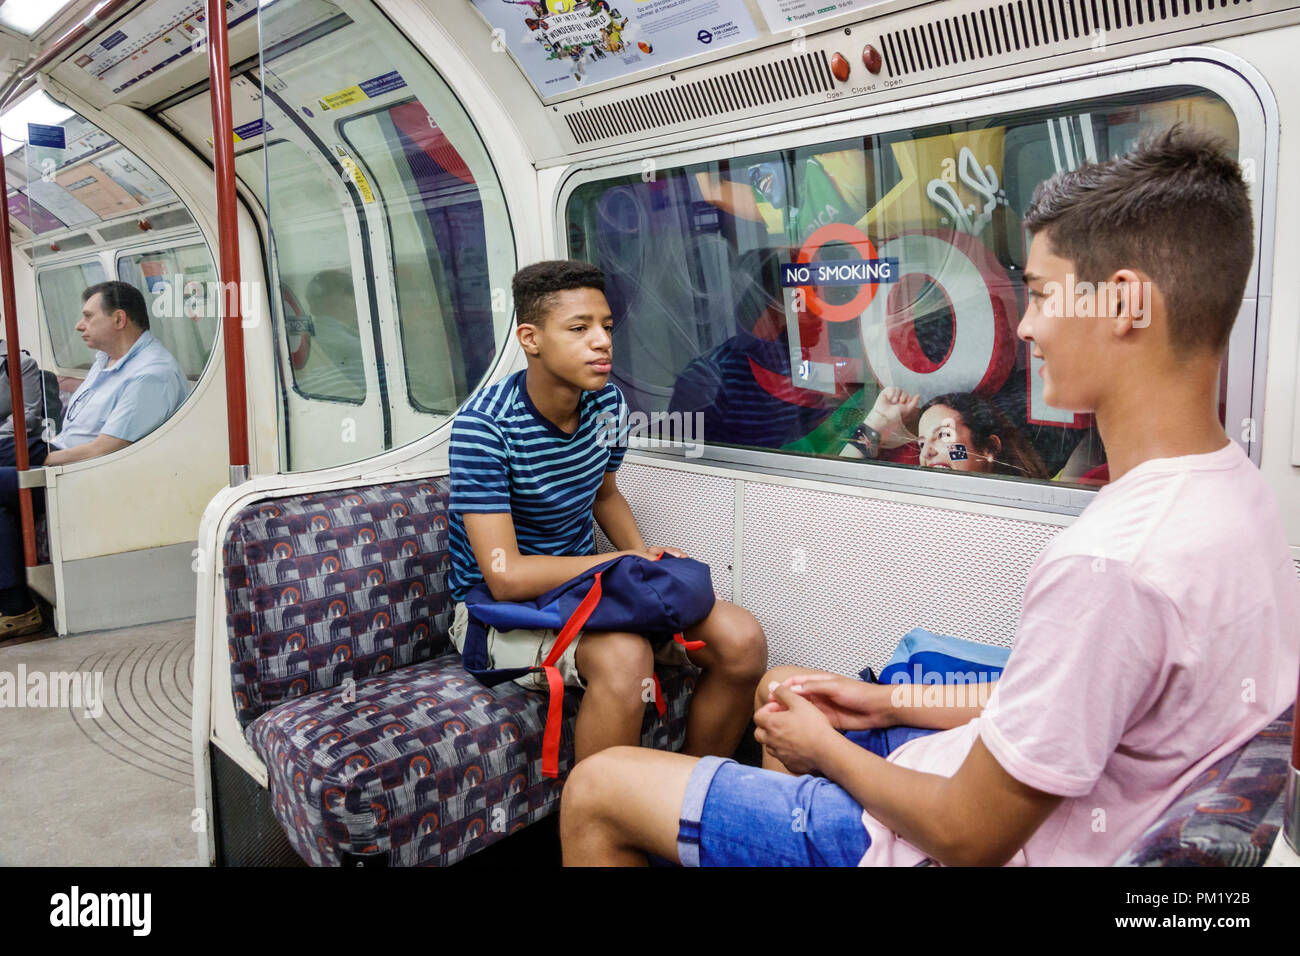 Londres Angleterre,Royaume-Uni,South Bank,Lambeth North Metro Station métro tube métro, train, intérieur, Black boy garçons, homme enfant enfant enfant enfant childre Banque D'Images